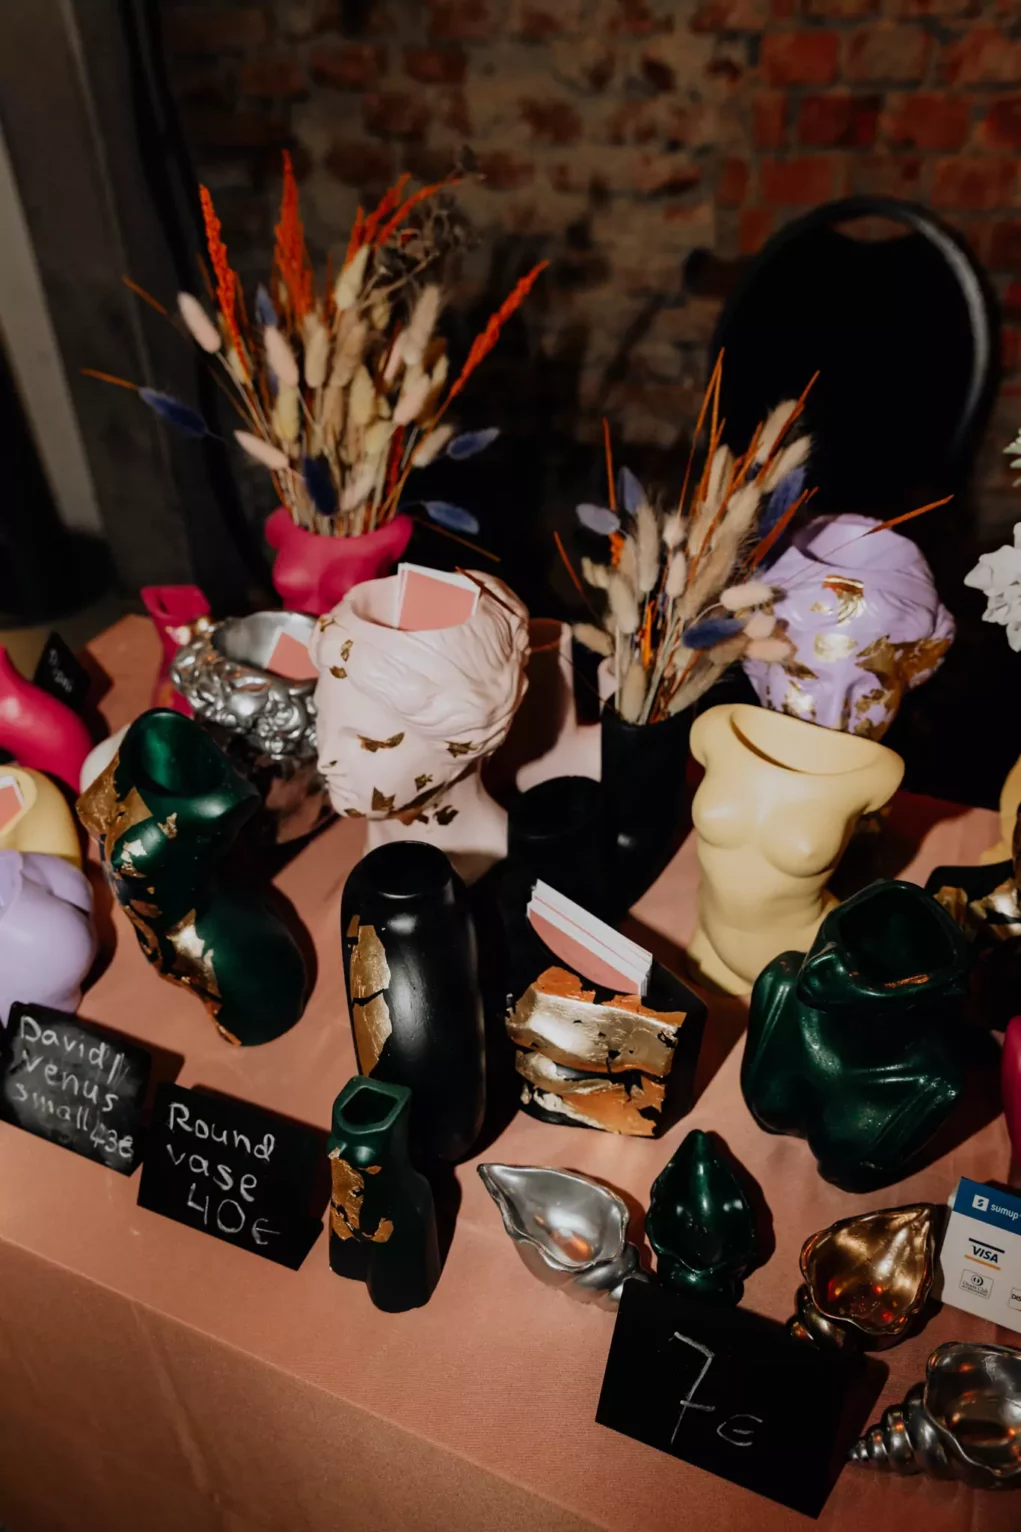 Foto auf 5min.at zeigt verschiedene kunstvolle Vasen.